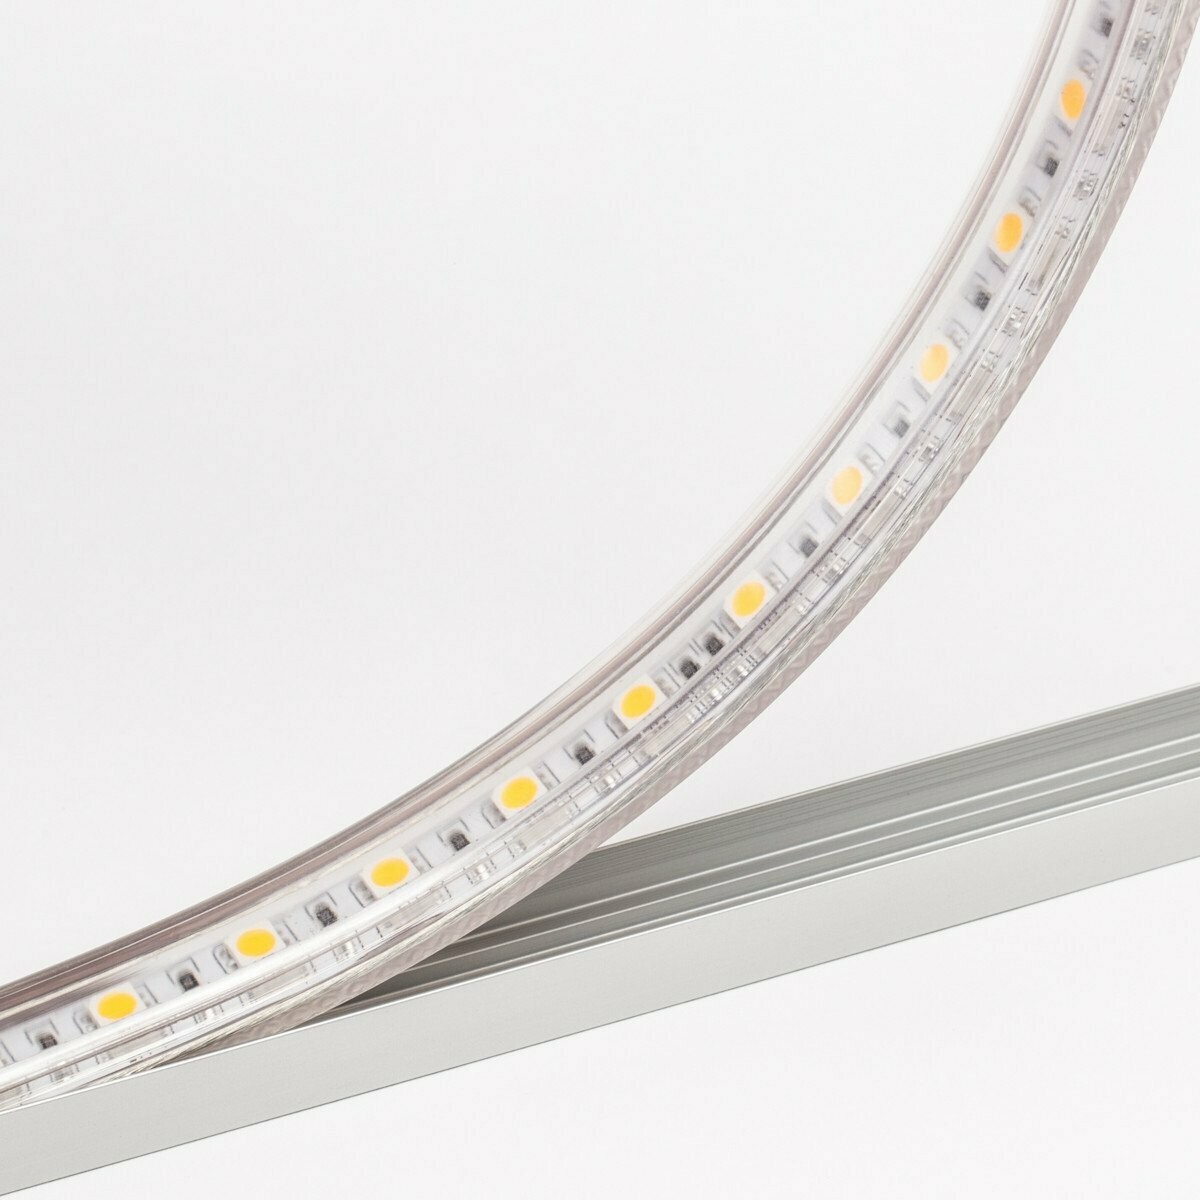 LED strip light 24V 4.8W/m 60 LED's/m IP67 by koch licht (Austria)